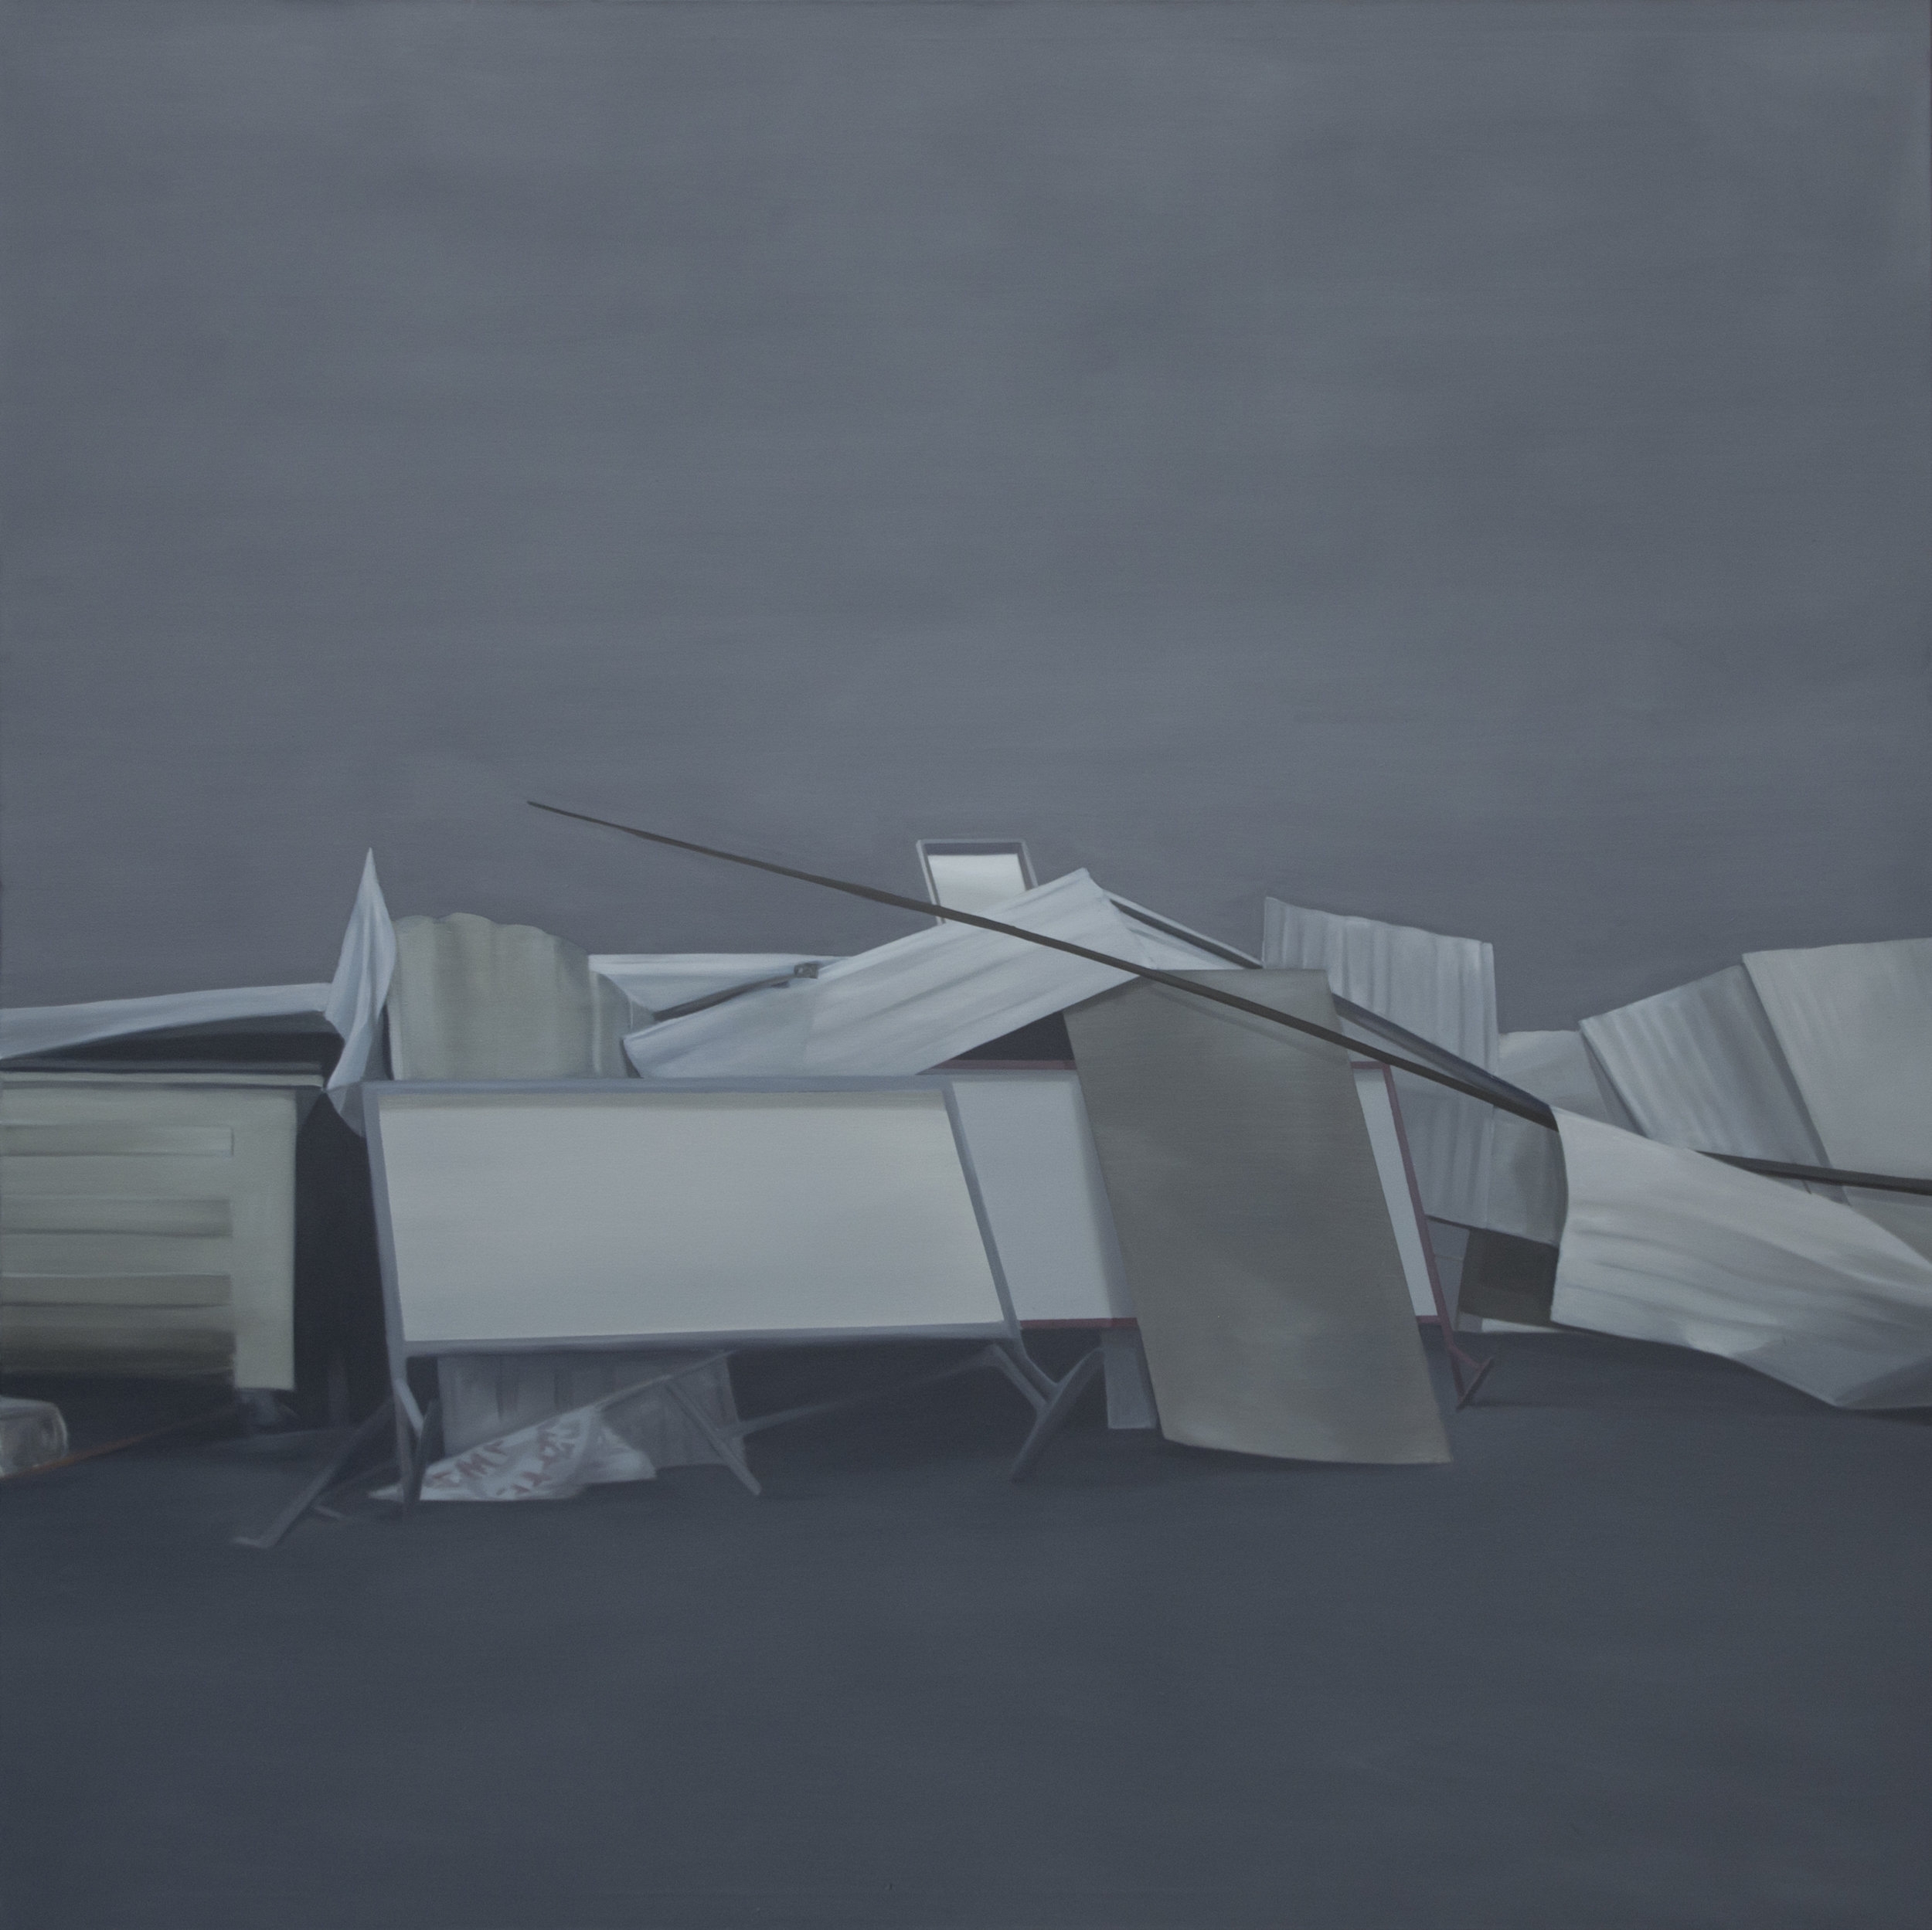 Barricade, oil on canvas, 180 x 180cm, 2017